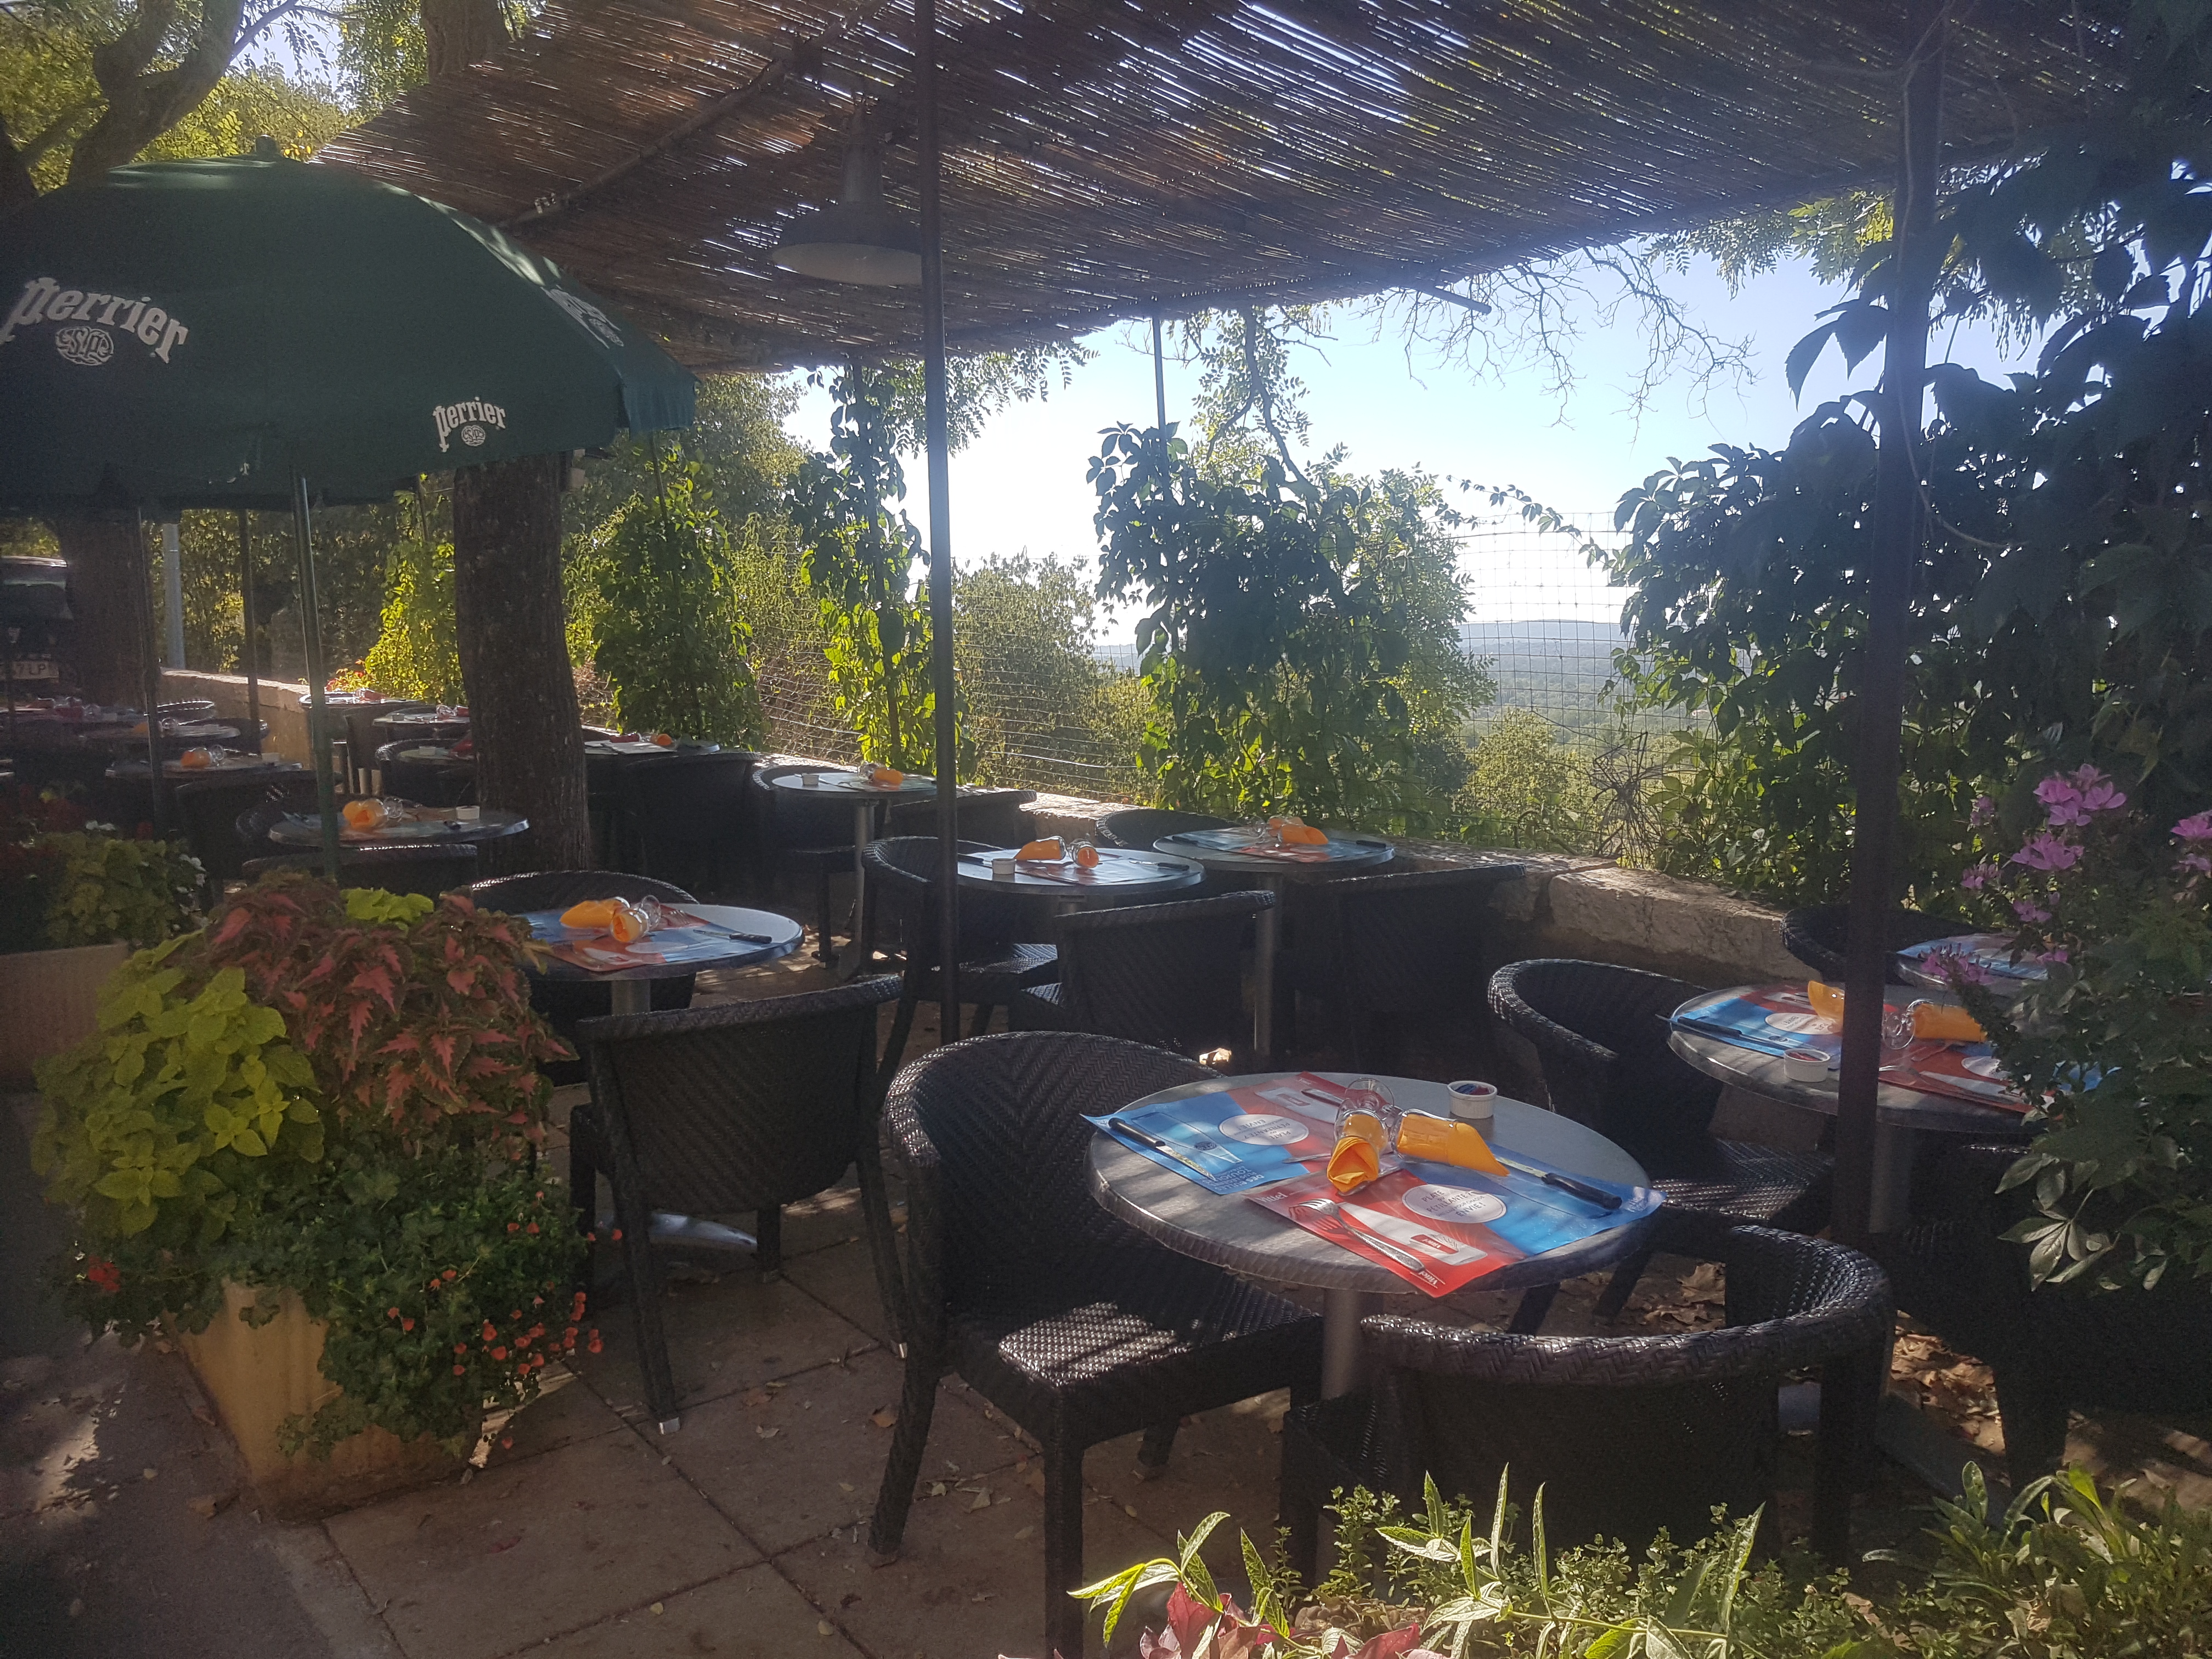 Dans un charmant village de Provence Verte dans le Parc du Verdon                                                              Tabac Fdj Bar et Restaurant  salle à manger de 30 places  et terrasses 50 places.
Très bonne rentabilité sur un axe de passage.
EBE 95800
Je souhaite prendre ma retraite.